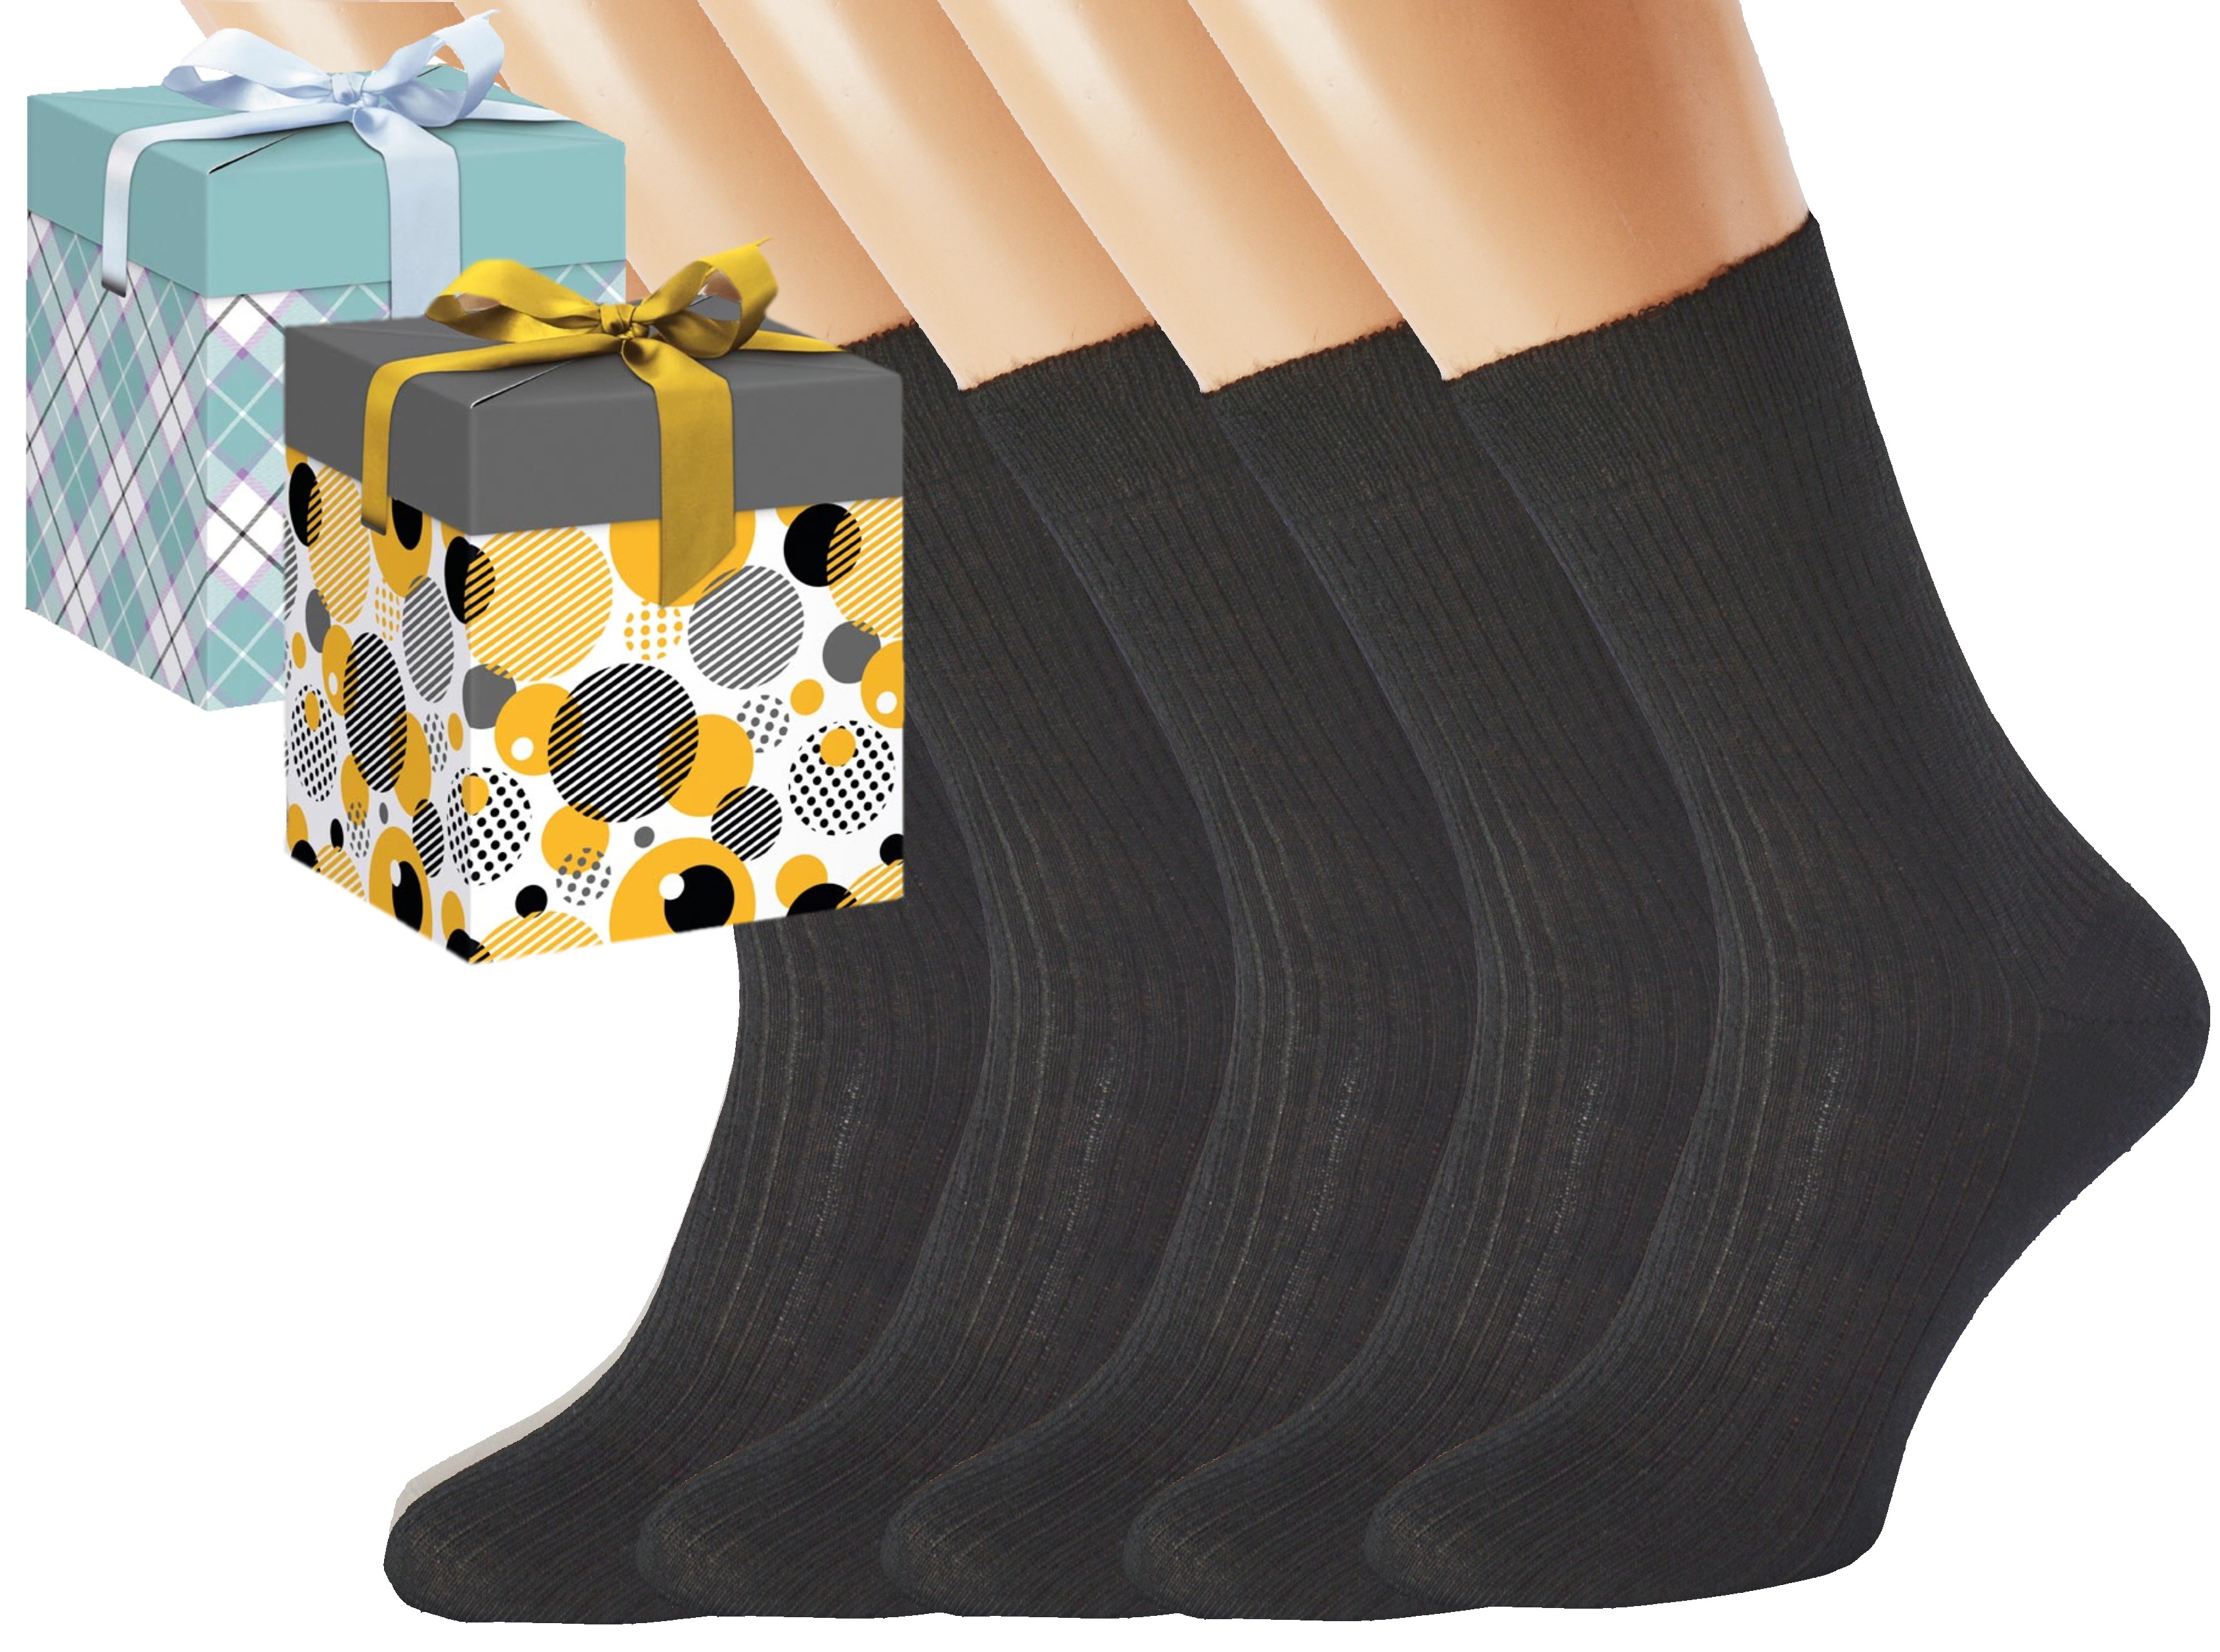 Dárkové balení merino zdravotních ponožek LUKÁŠ KUKS Barva: Černé, Velikost: EUR 39-41 (UK 6-7), Zvolte variantu dárkového balení: Mint kostkovaná